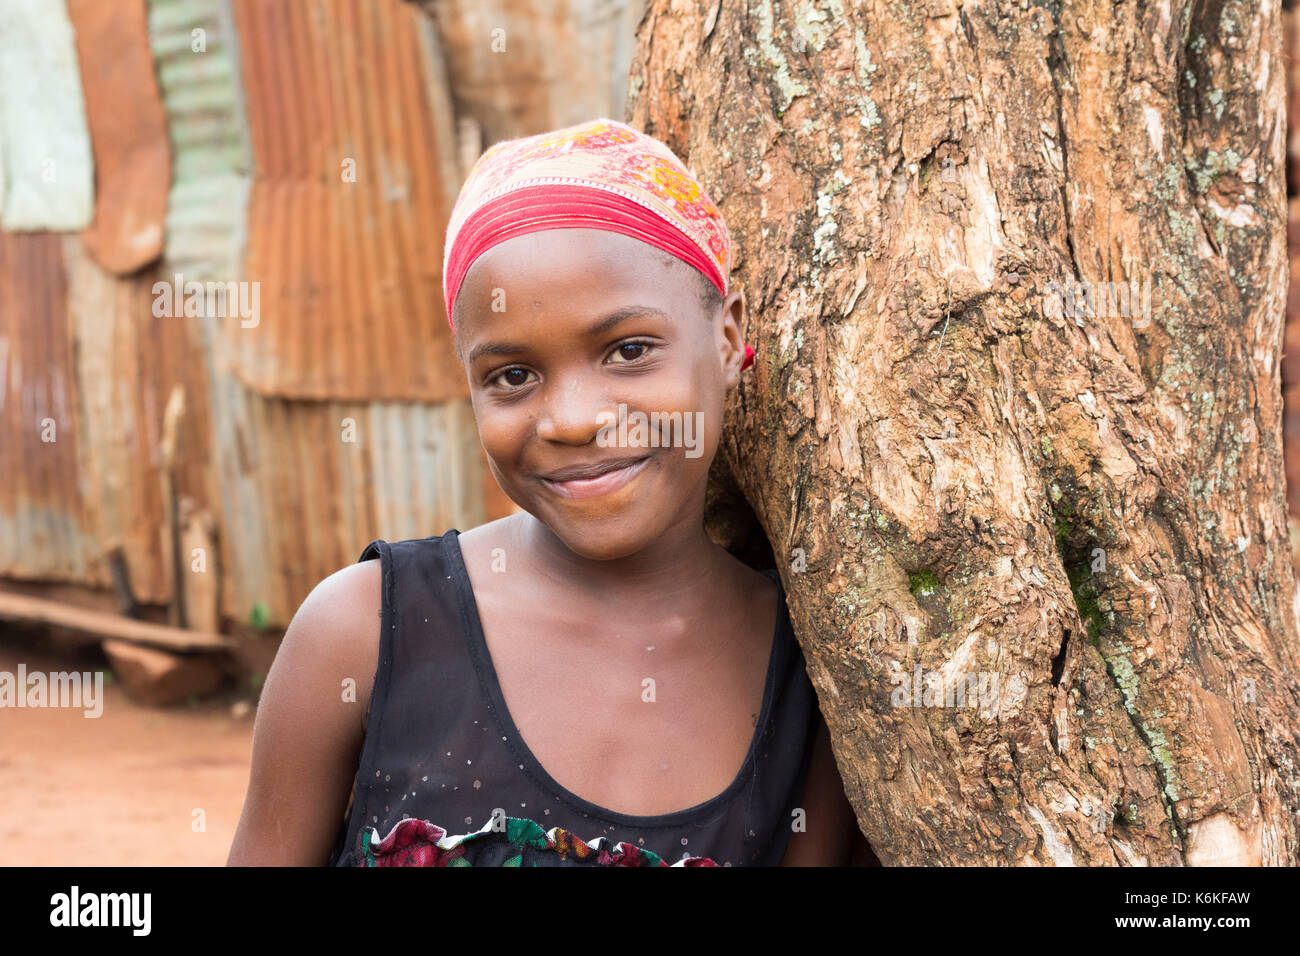 Une belle black teenage girl smiling et appuyé contre un arbre. elle porte un foulard rouge. Banque D'Images